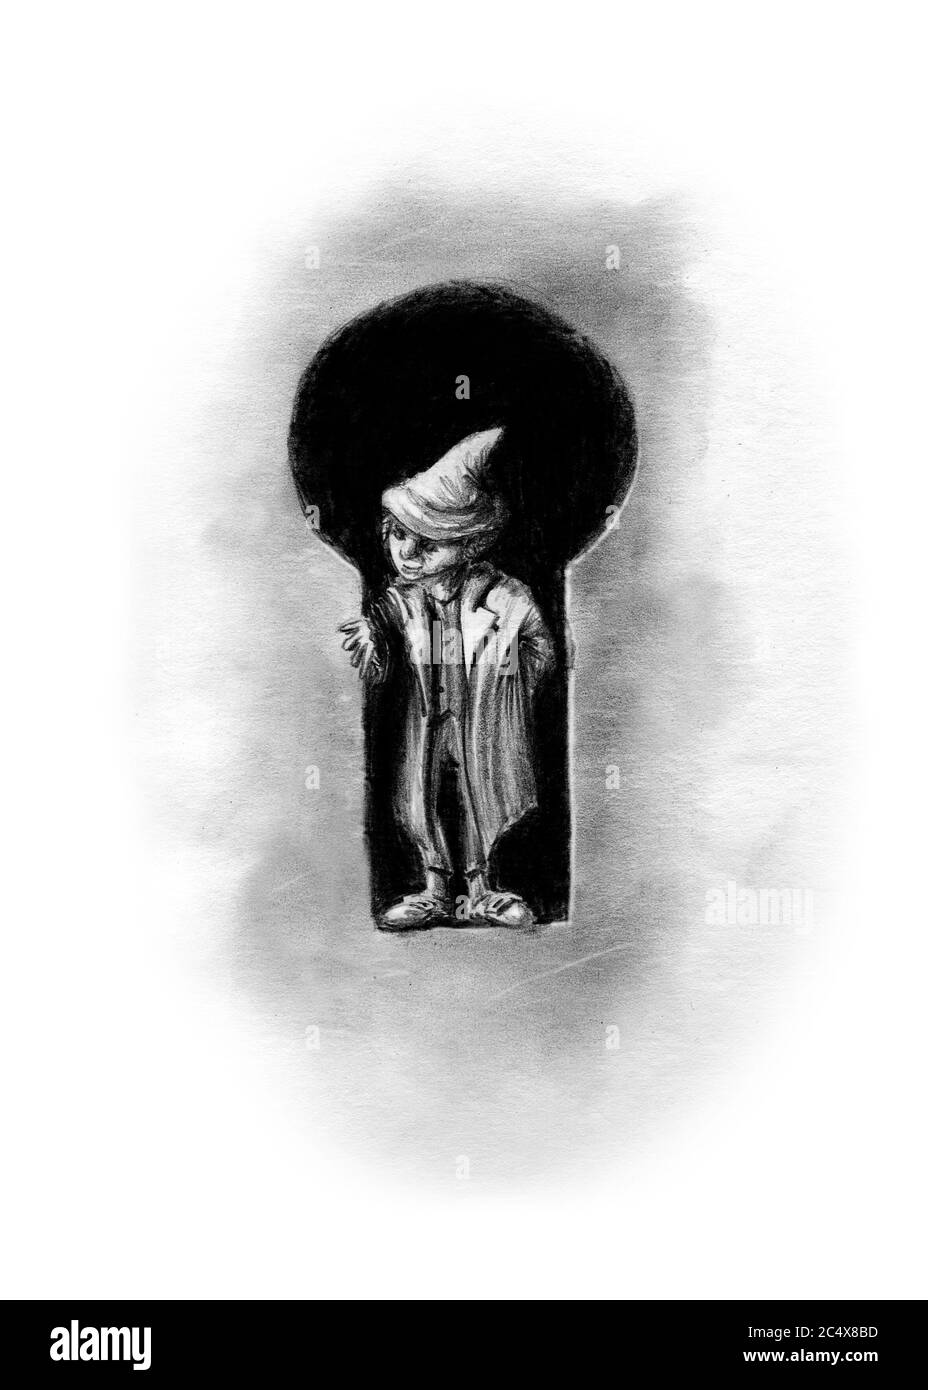 Kleiner Kobold in einem Schlüsselloch - schwarz-weiße Bleistiftzeichnung auf Papier Stockfoto